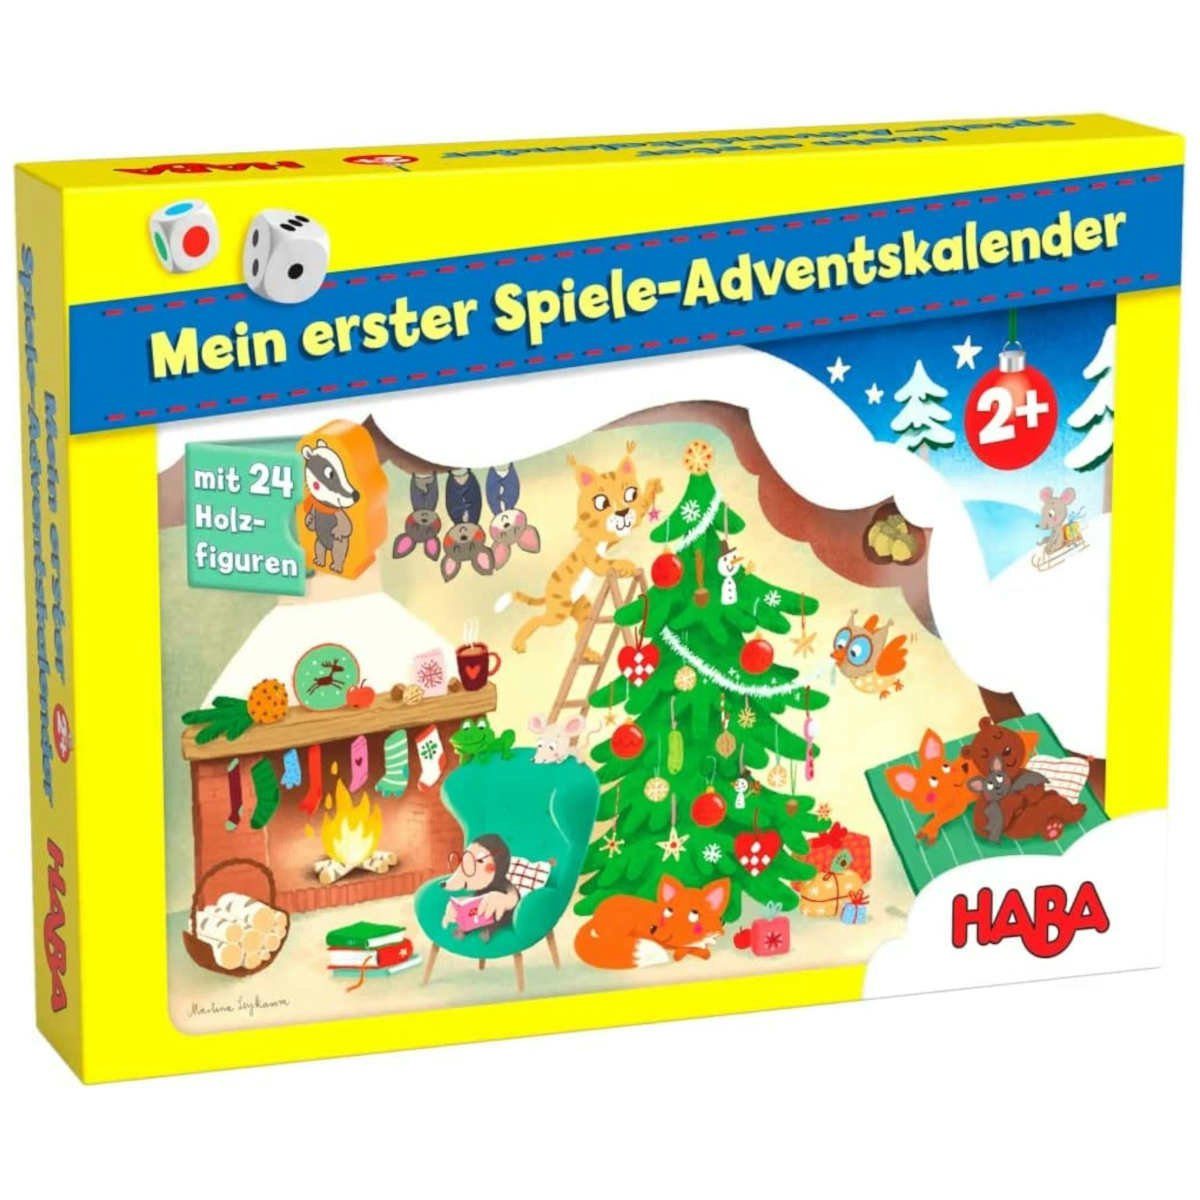 Kopfkissen Haba Mein erster Spiele-Adventskalender, Haba